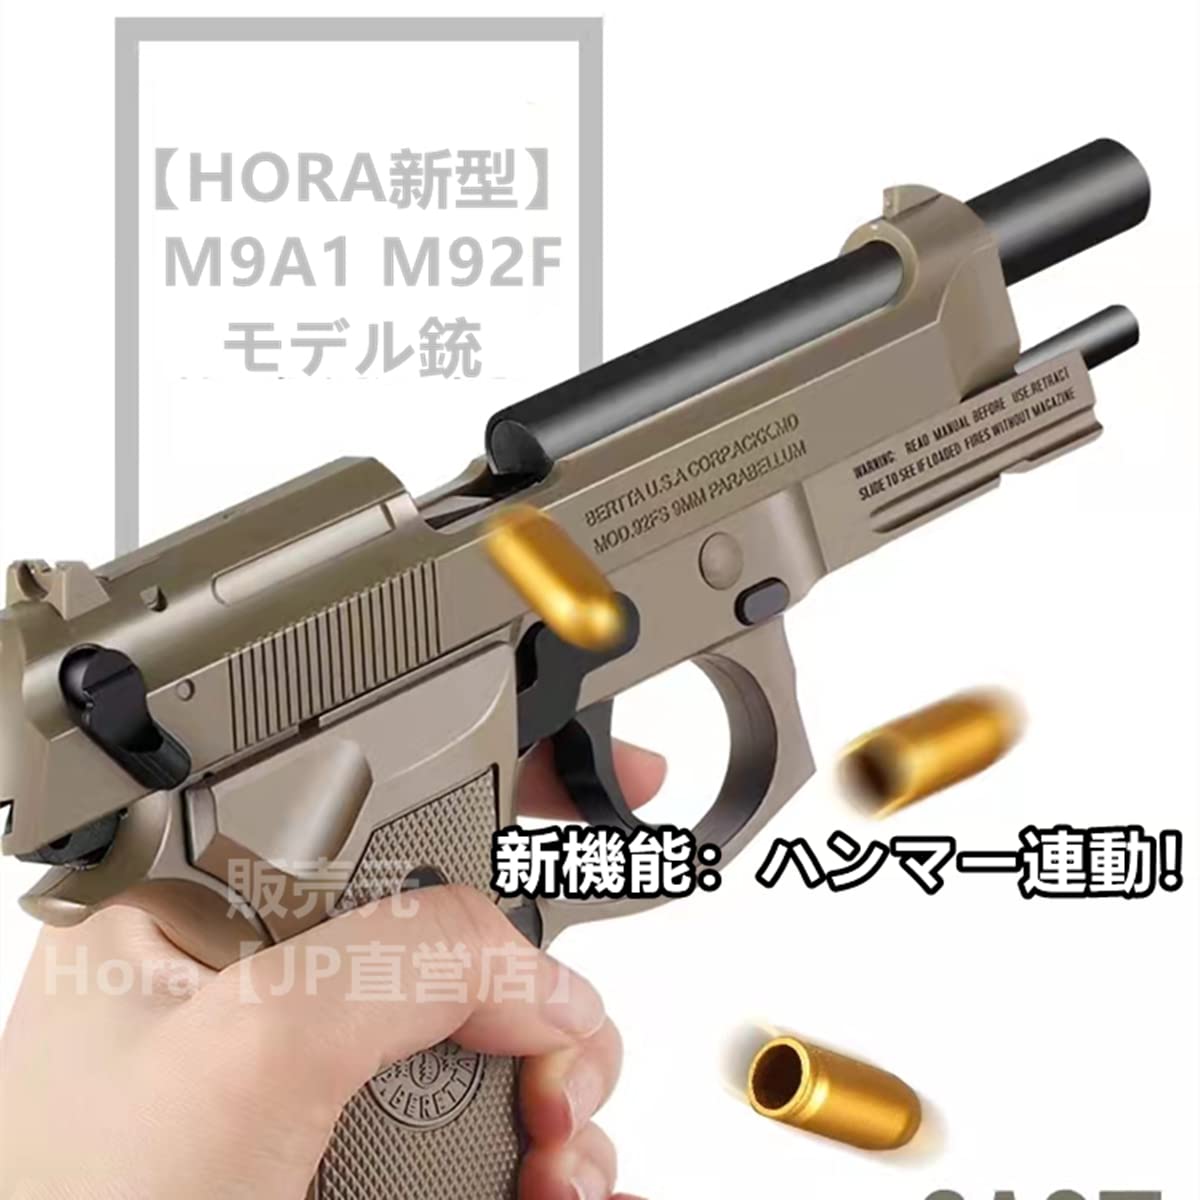 ハンドガン M9 92F モデル銃 ブローバックスライドストップ 半自動式